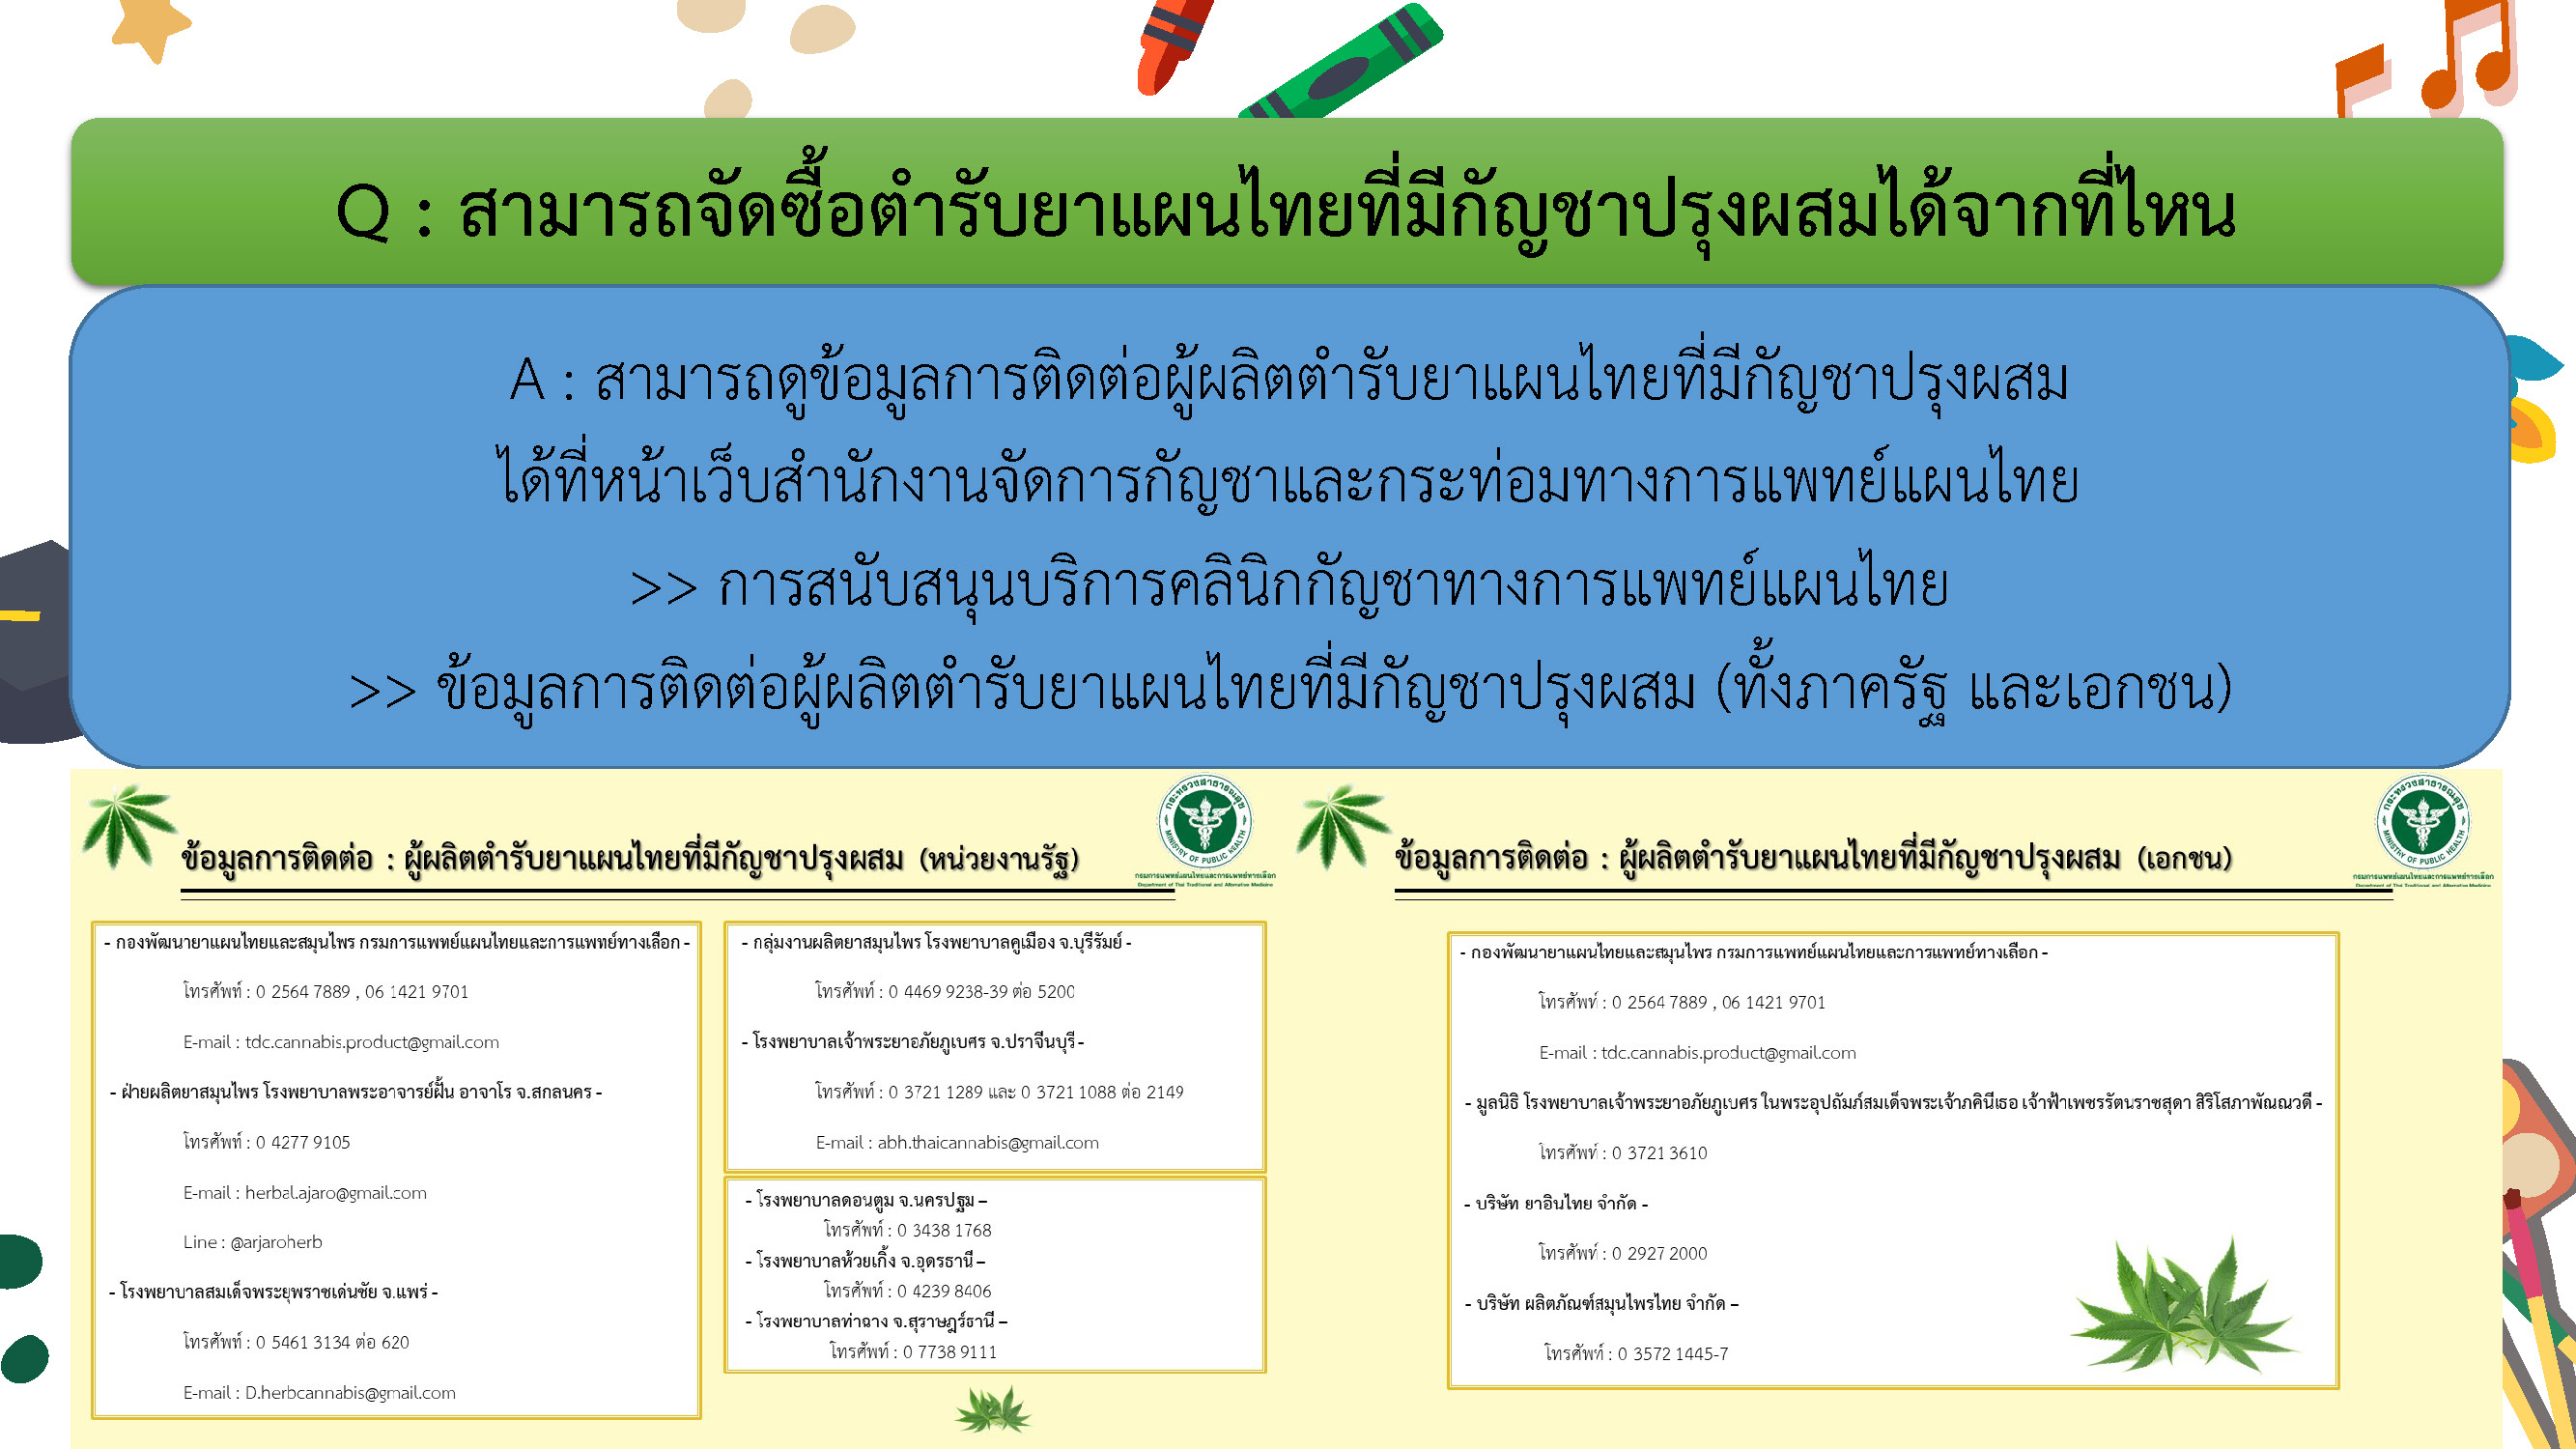 QA คำถามที่พบบ่อยเกี่ยวกับการจัดบริการคลินิกกัญชาทางการแพทย์แผนไทย Page 08